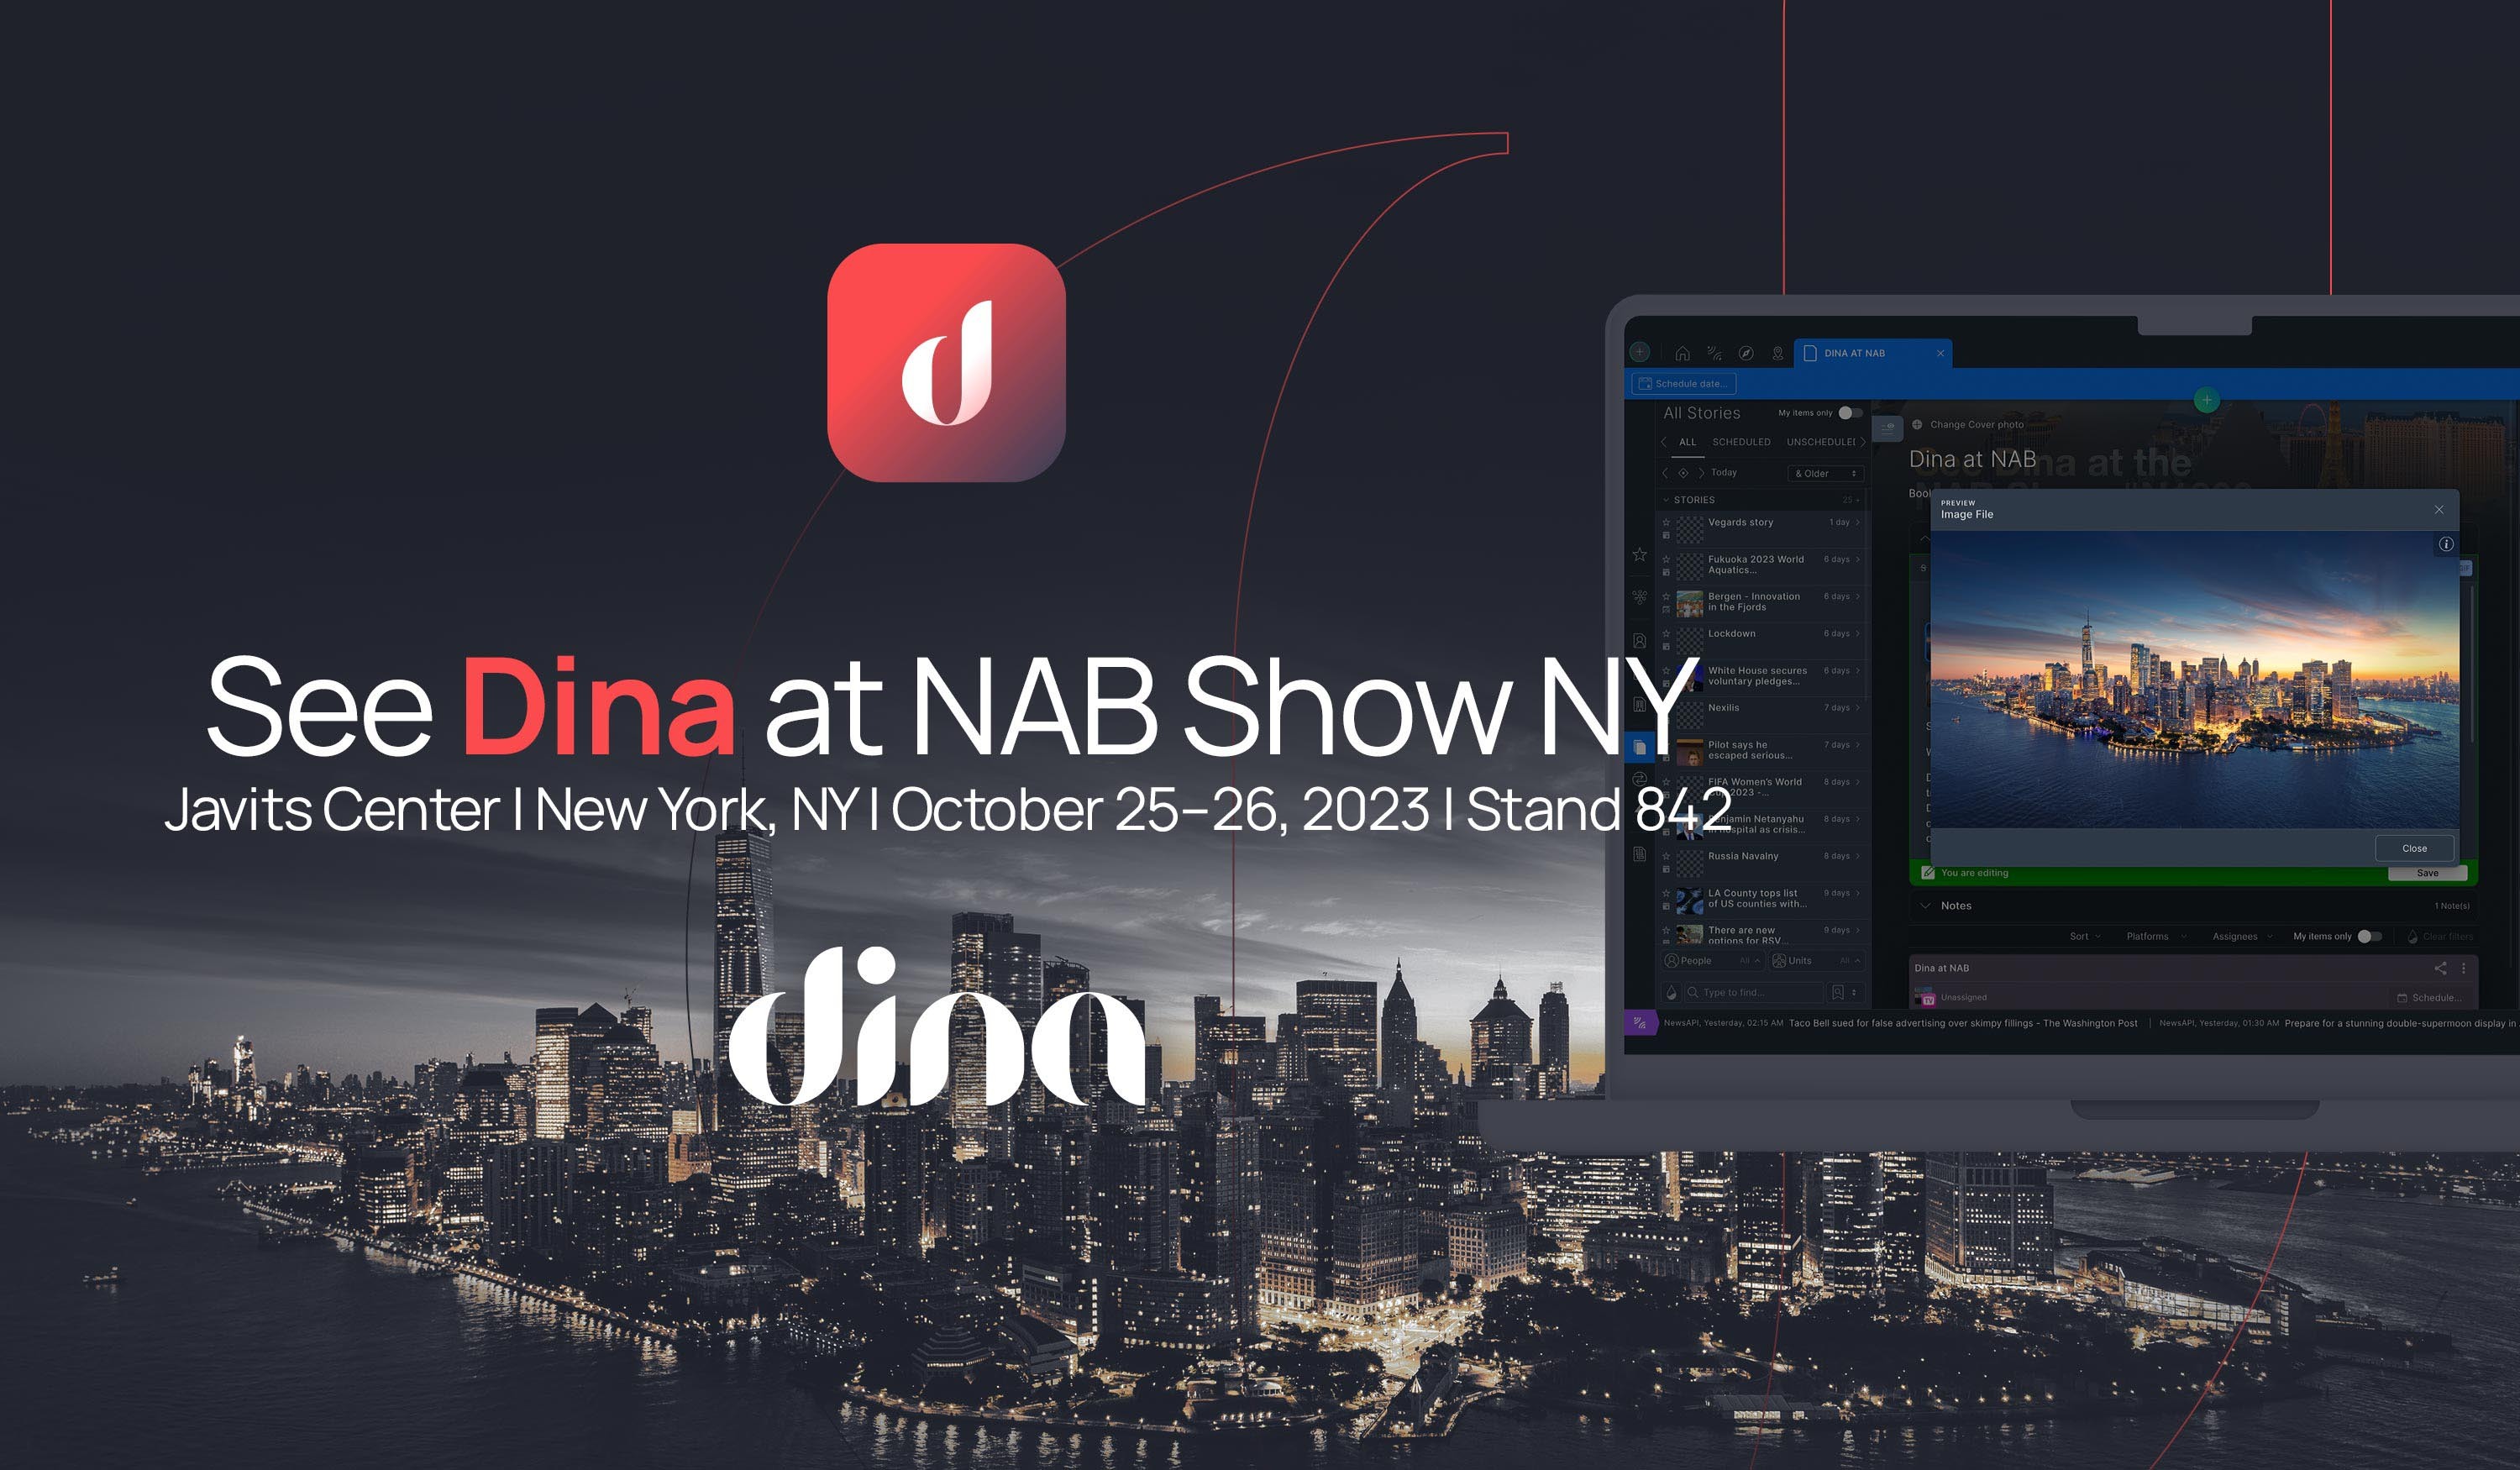 Dina at NAB Show NY banner